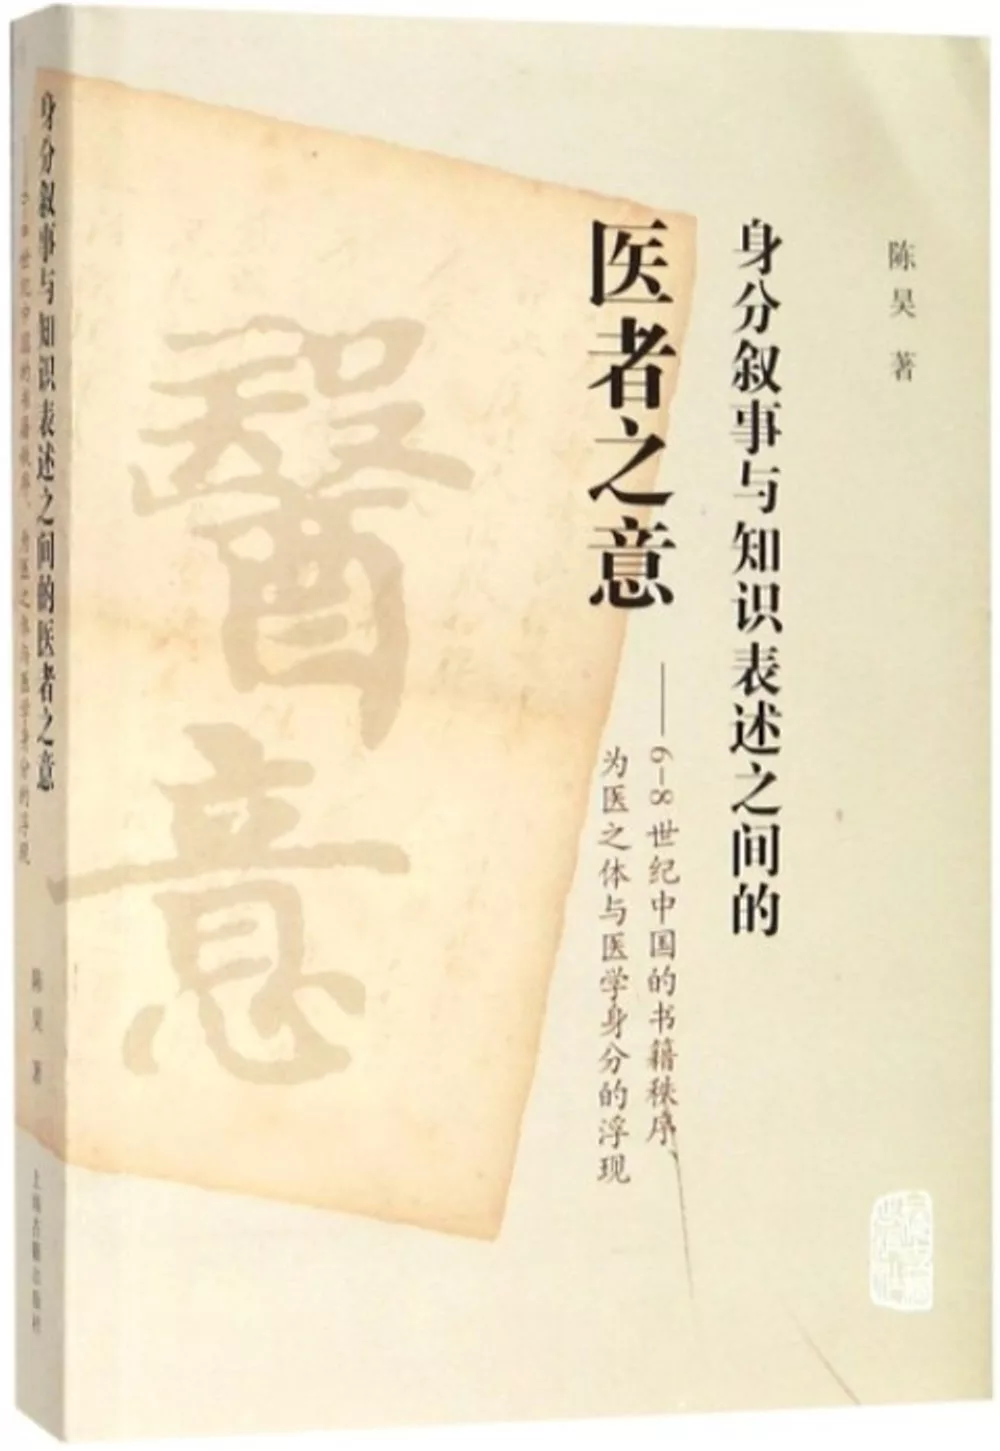 身分敘事與知識表述之間的醫者之意：6-8世紀中國的書籍秩序、為醫之體與醫學身分的浮現